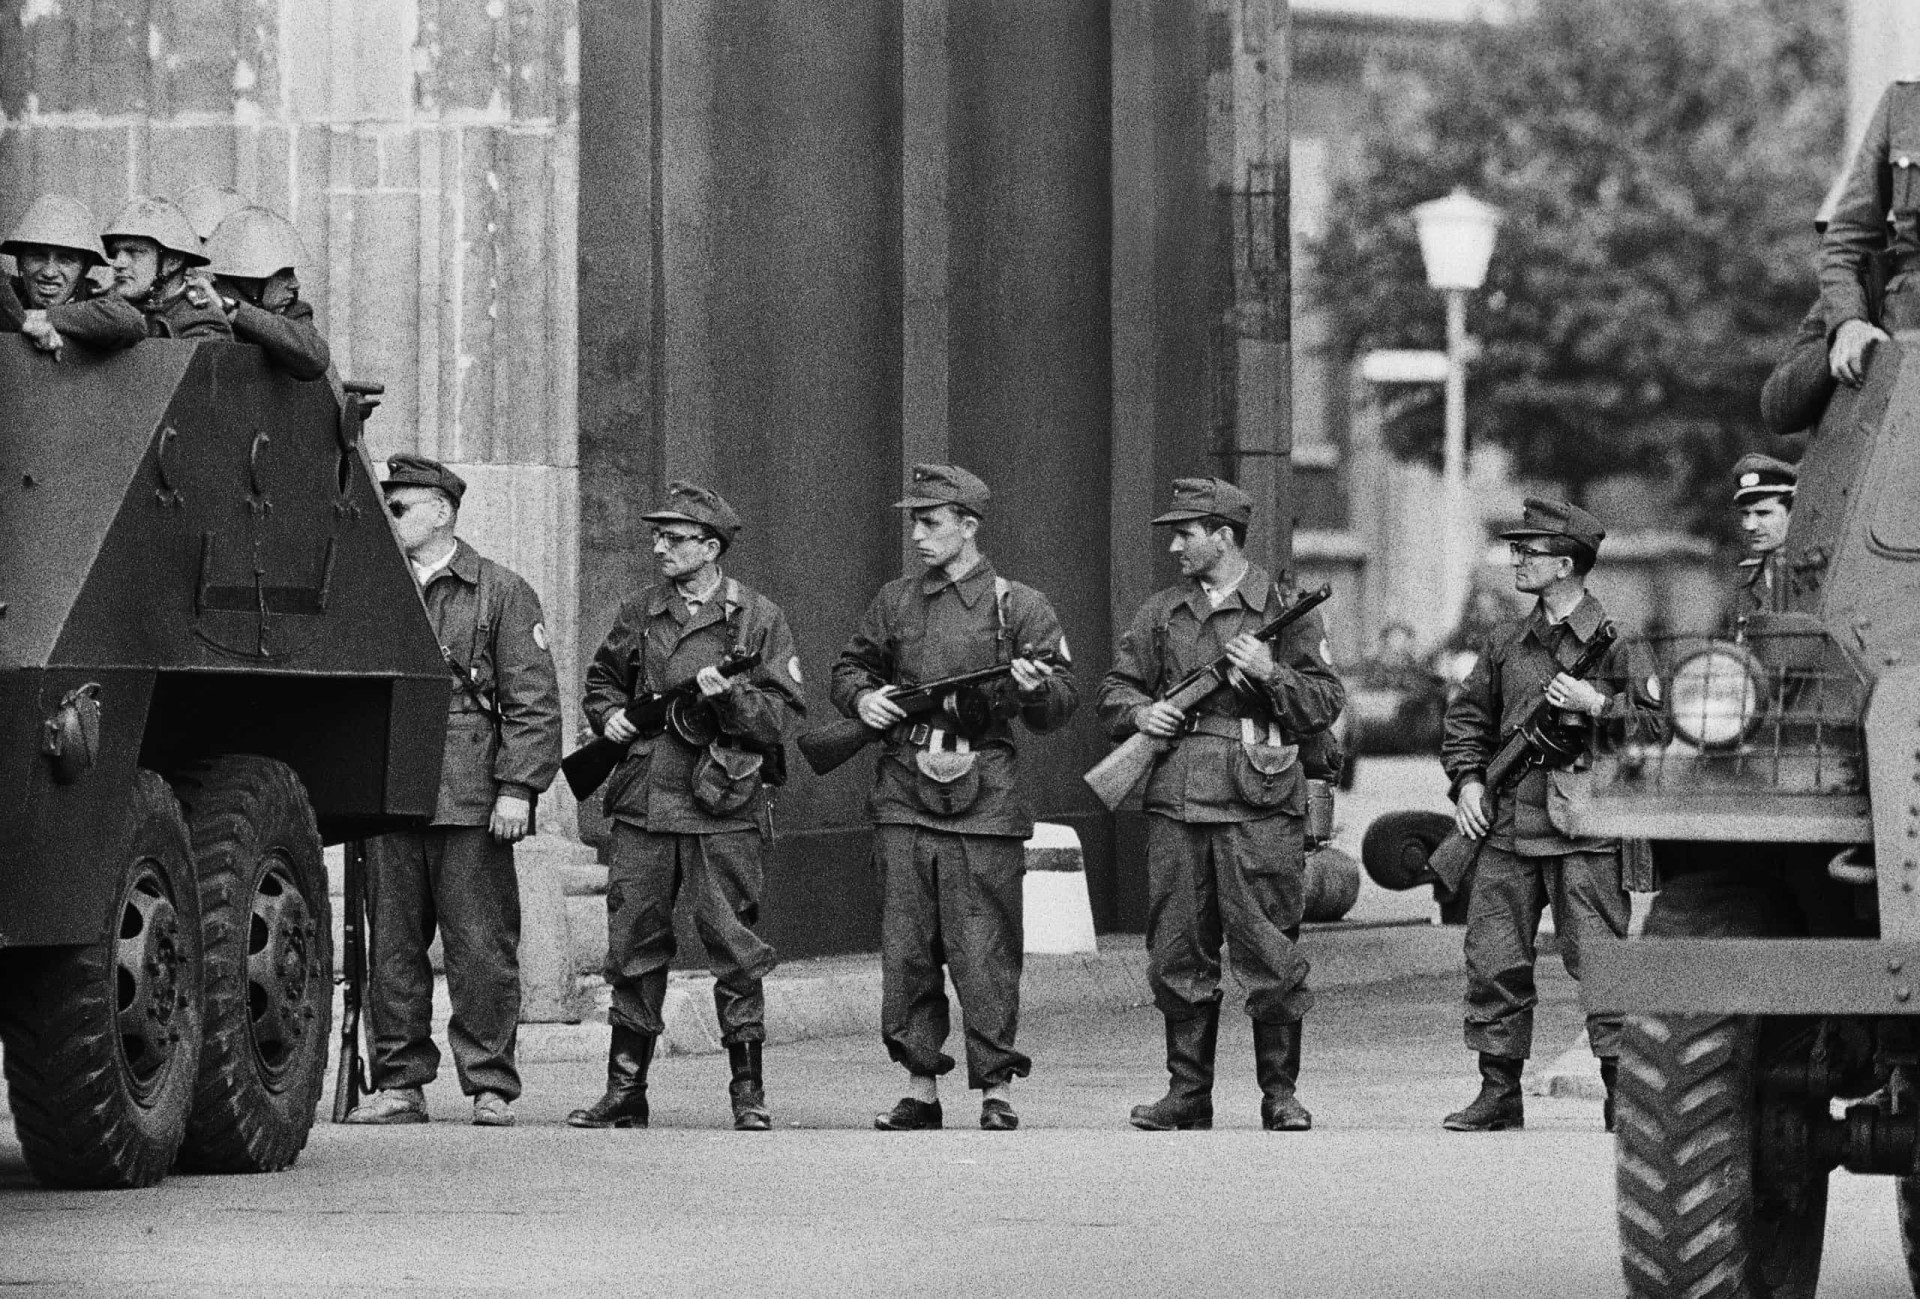 <p>Im Bild: Mitglieder der ostdeutschen paramilitärischen Organisation <em>Kampfgruppe der Arbeiterklasse</em> bewachen den Grenzübergang in der Nähe des Brandenburger Tors.</p>